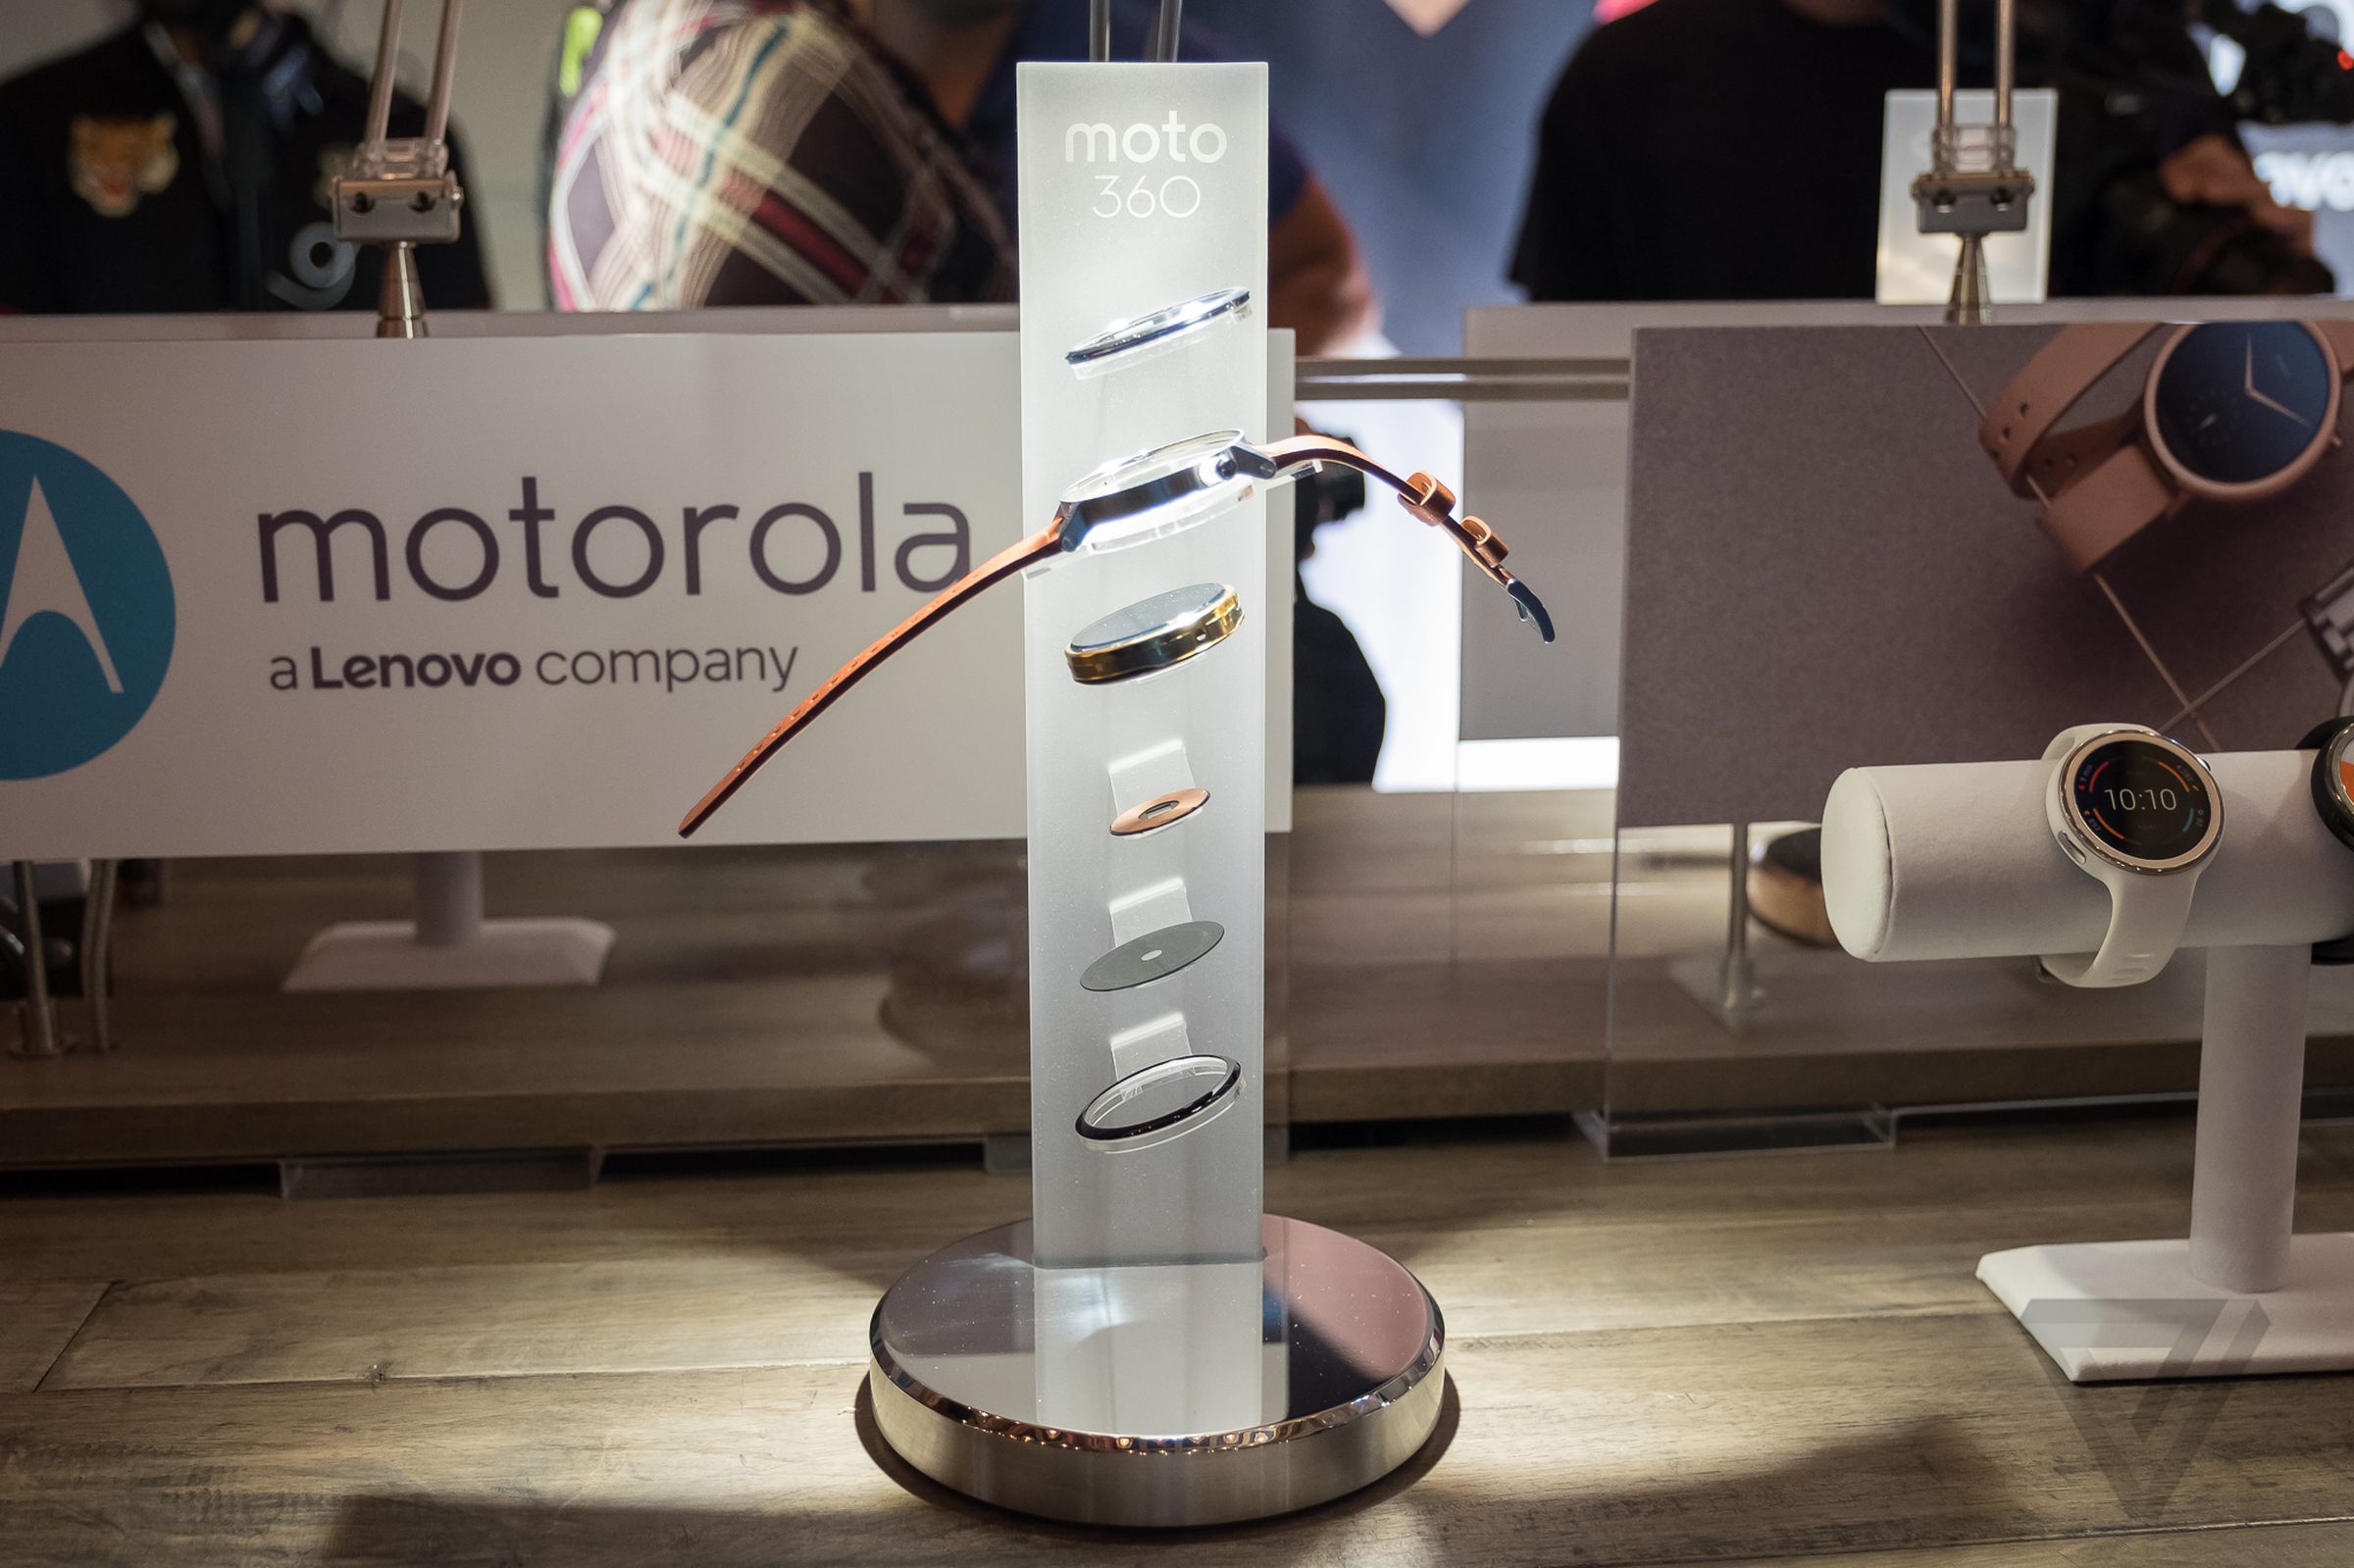 Motorola's new Moto 360 collection